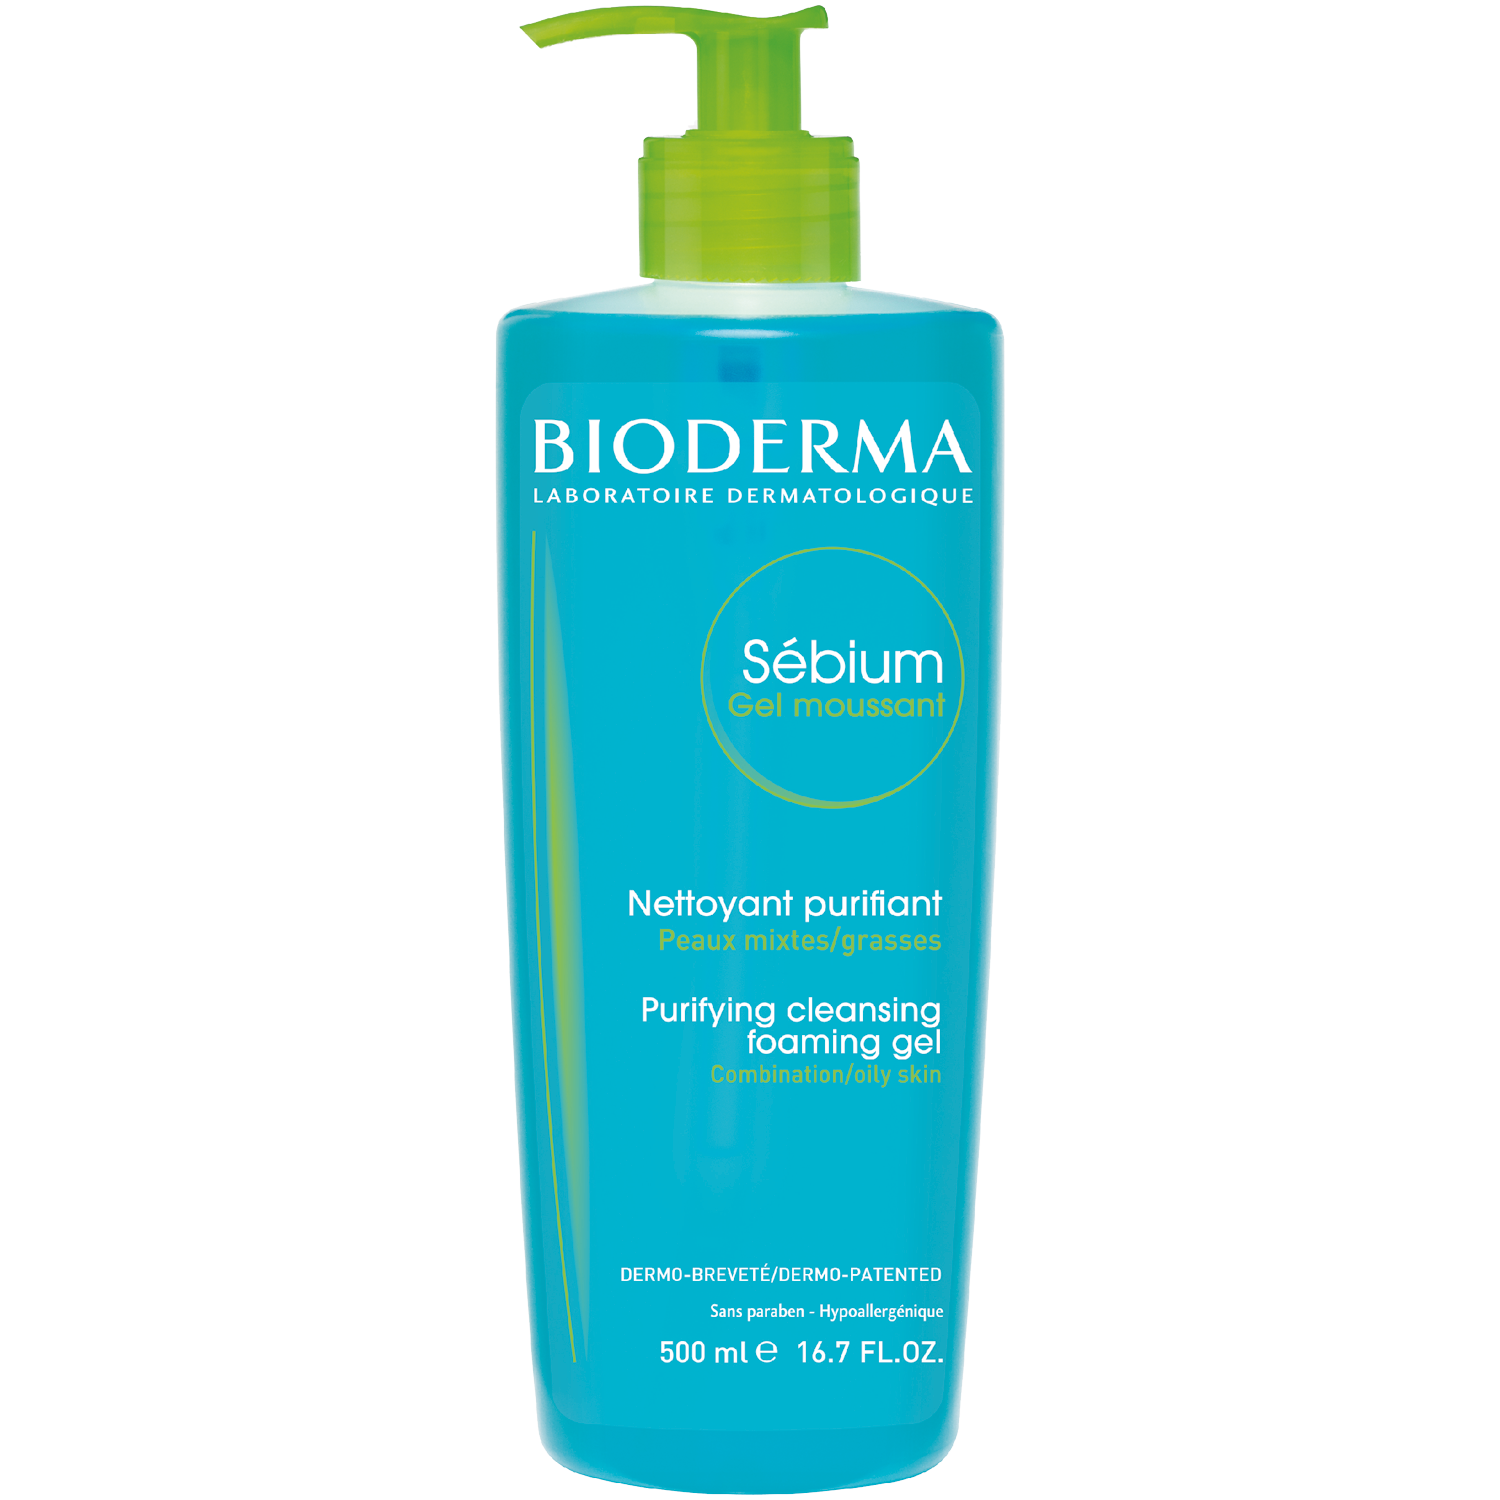 Bioderma Sebium Gel Moussant гель для умывания антибактериальный, 500 мл bioderma sebium gel moussant гель для умывания антибактериальный 500 мл